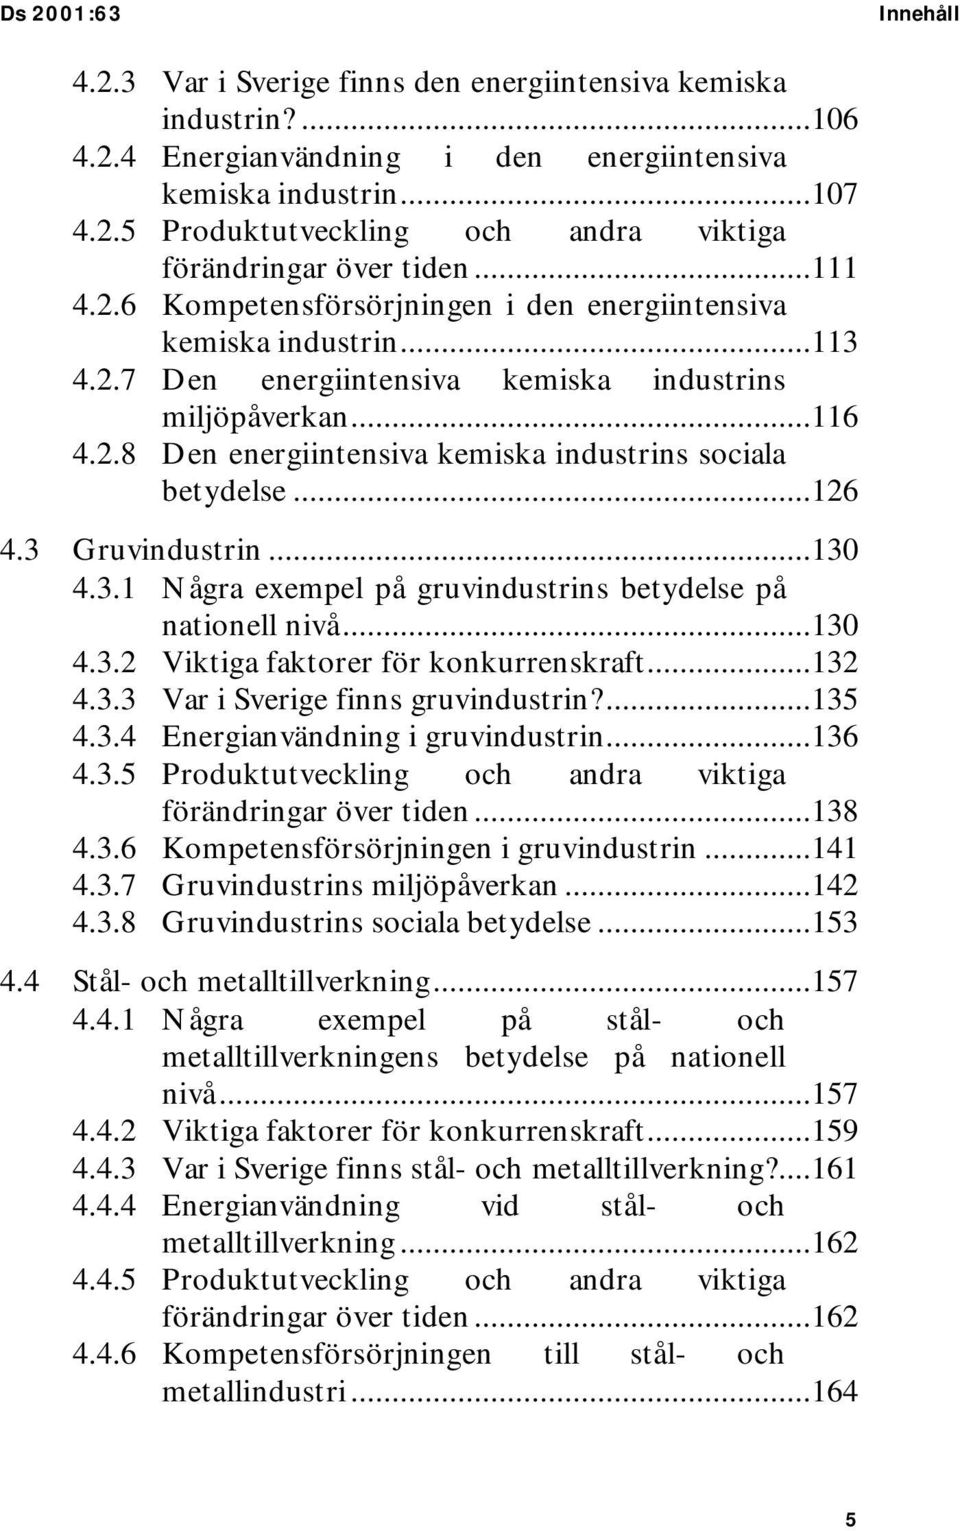 ..126 4.3 Gruvindustrin...130 4.3.1 Några exempel på gruvindustrins betydelse på nationell nivå...130 4.3.2 Viktiga faktorer för konkurrenskraft...132 4.3.3 Var i Sverige finns gruvindustrin?...135 4.